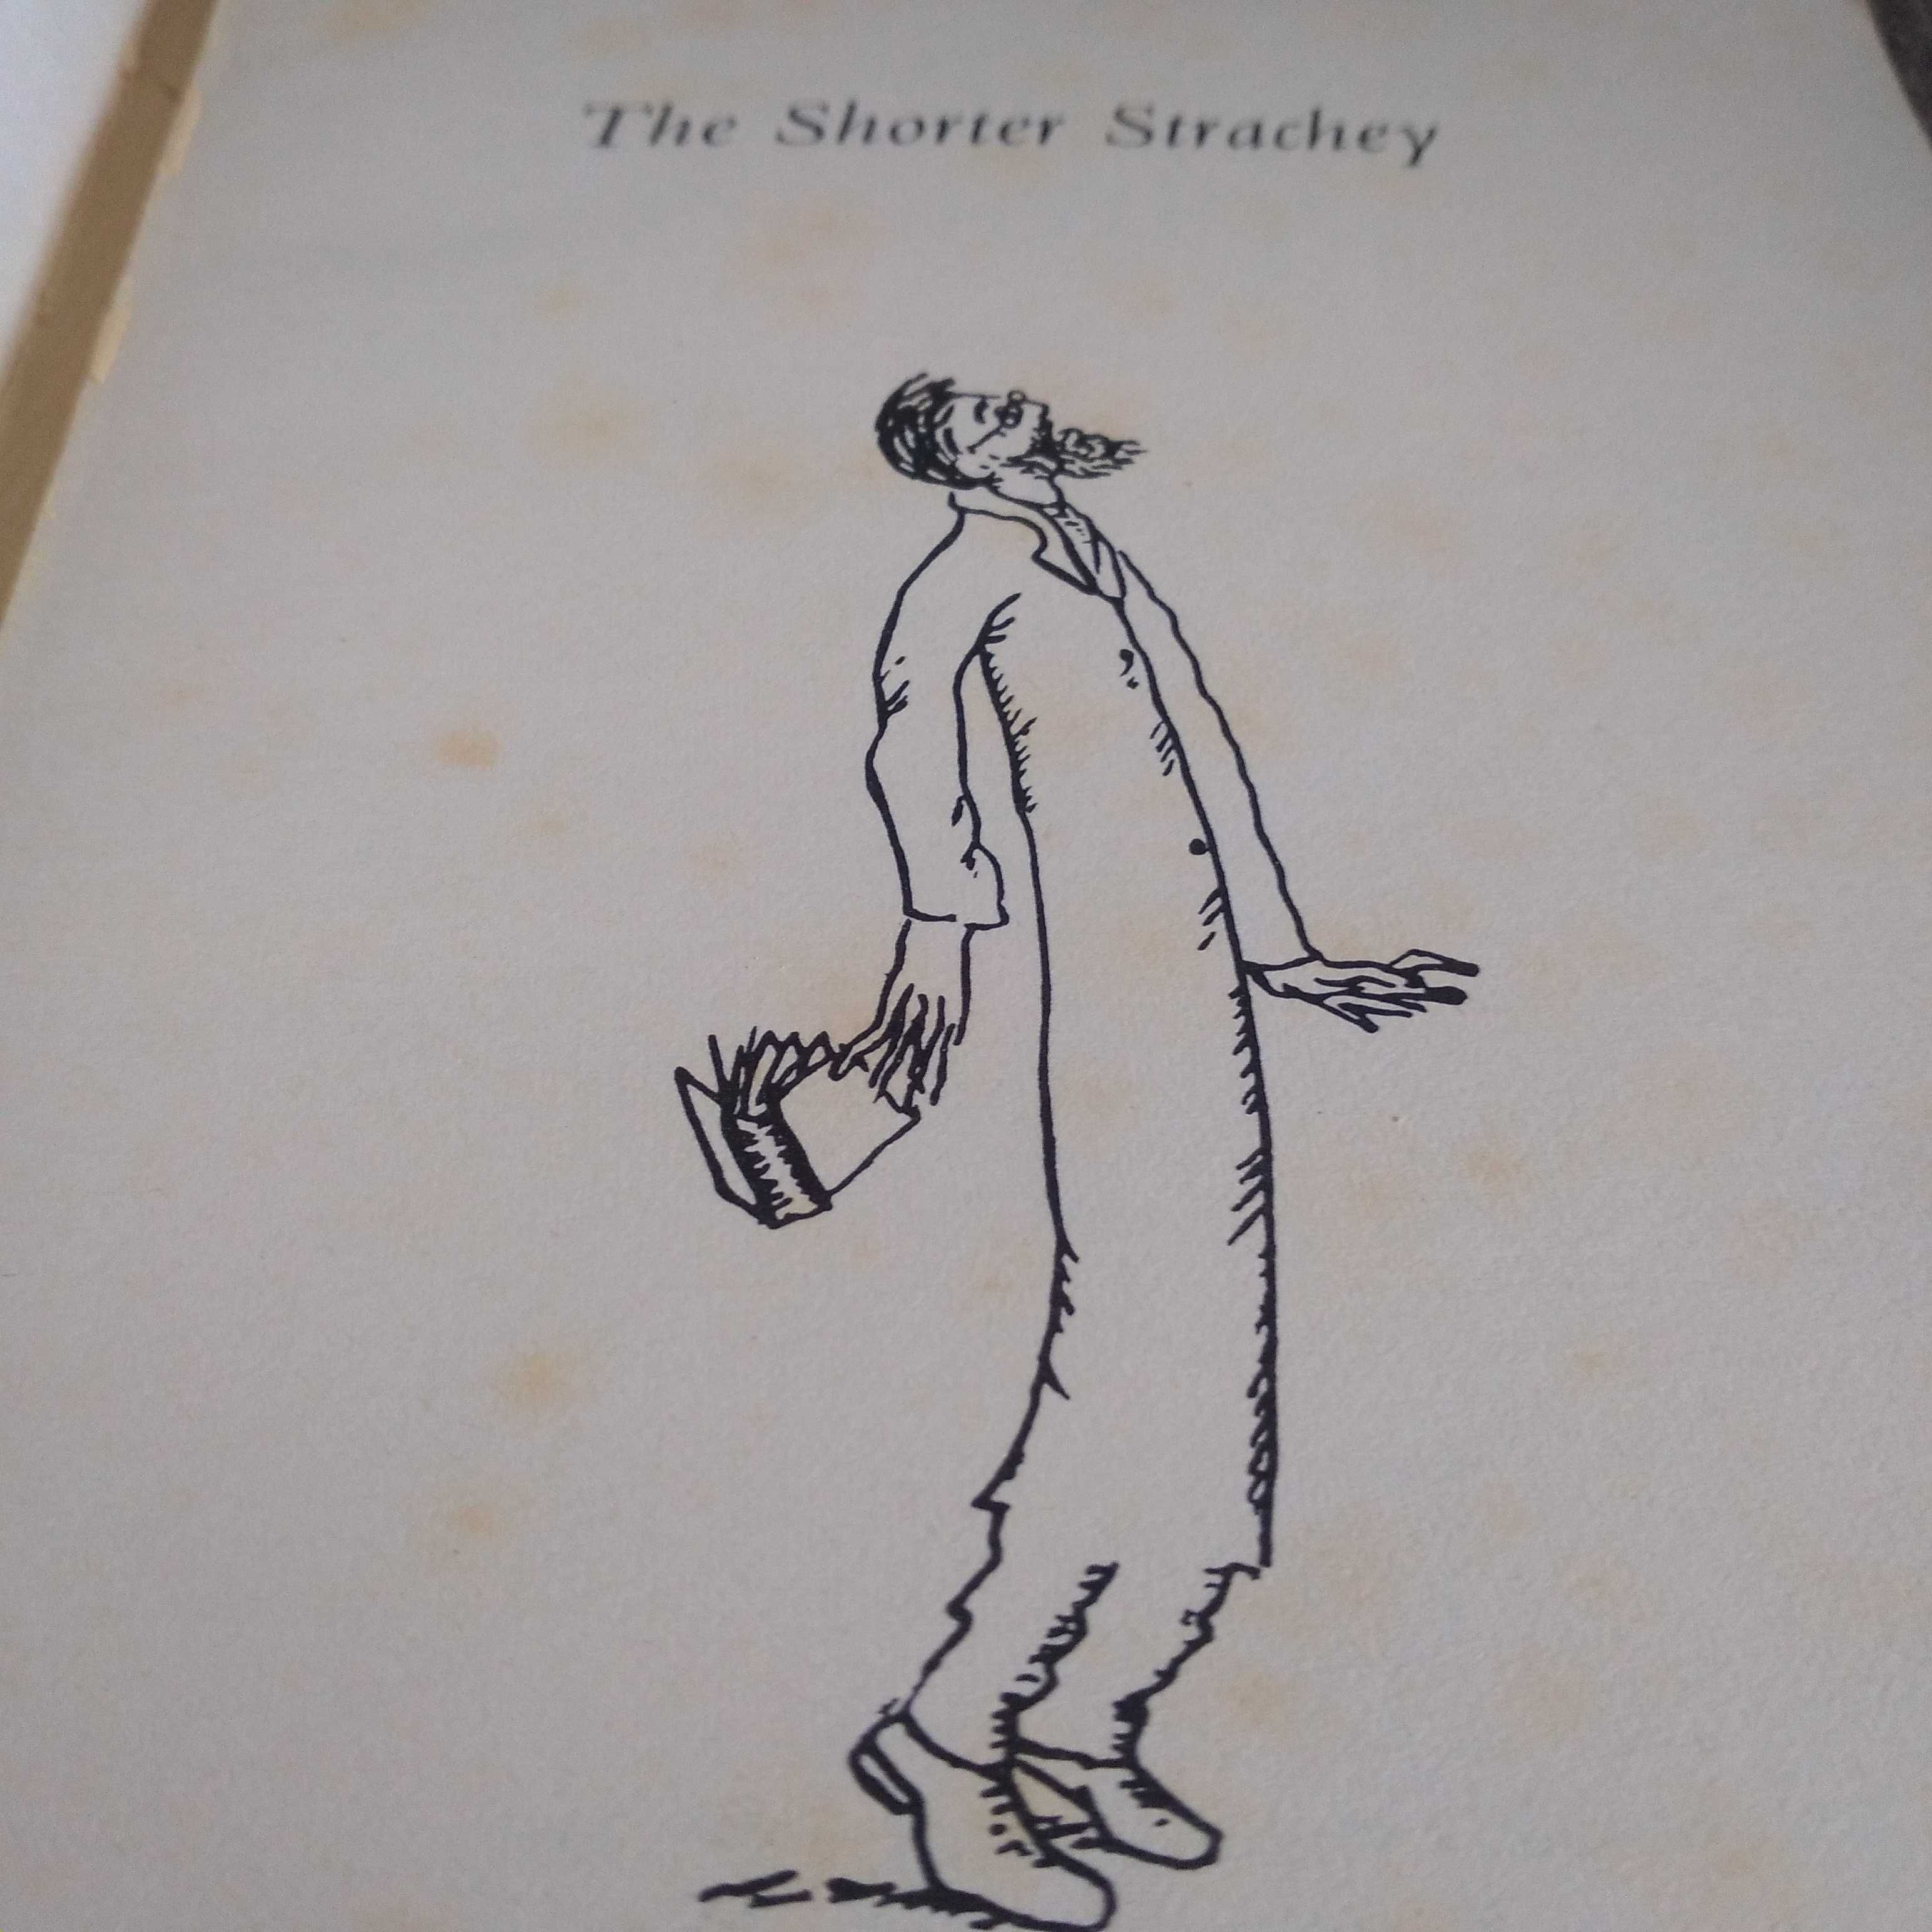 "The shorter Strachey"